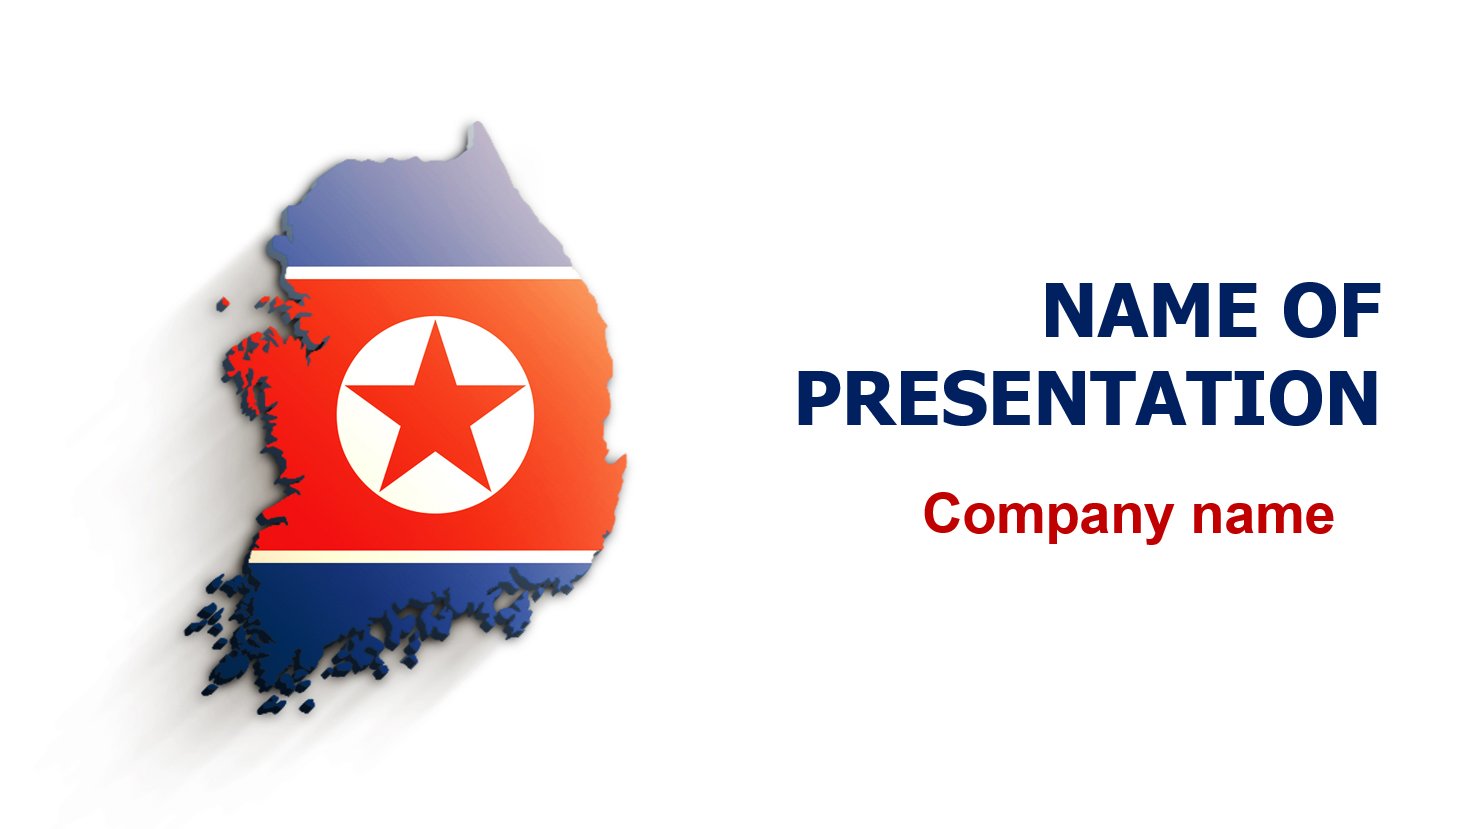 south korea presentation ppt